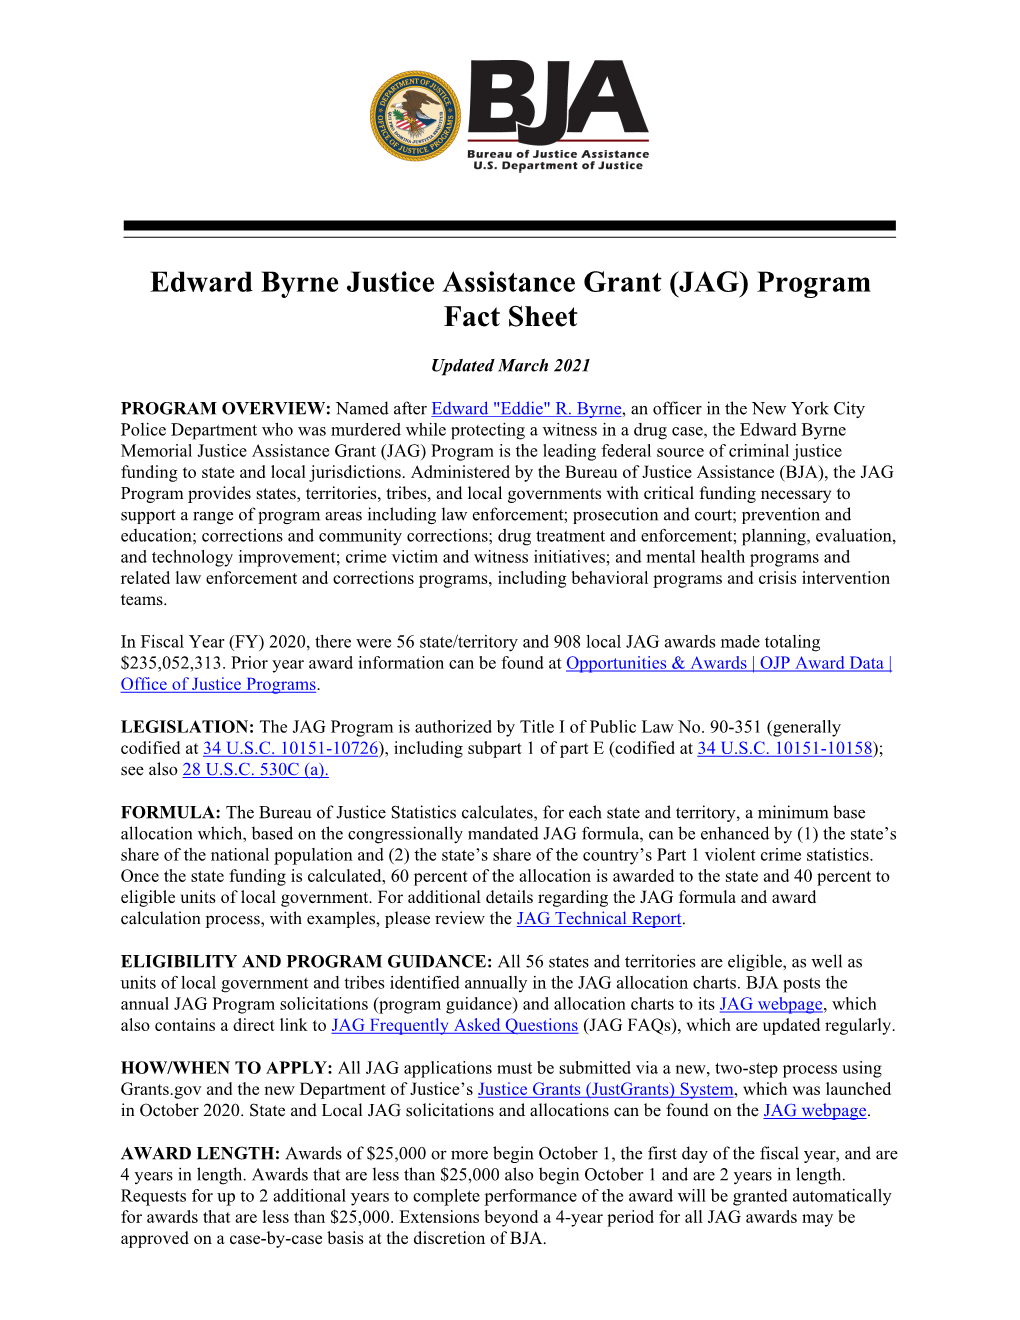 Edward Byrne Justice Assistance Grant (JAG) Program Fact Sheet